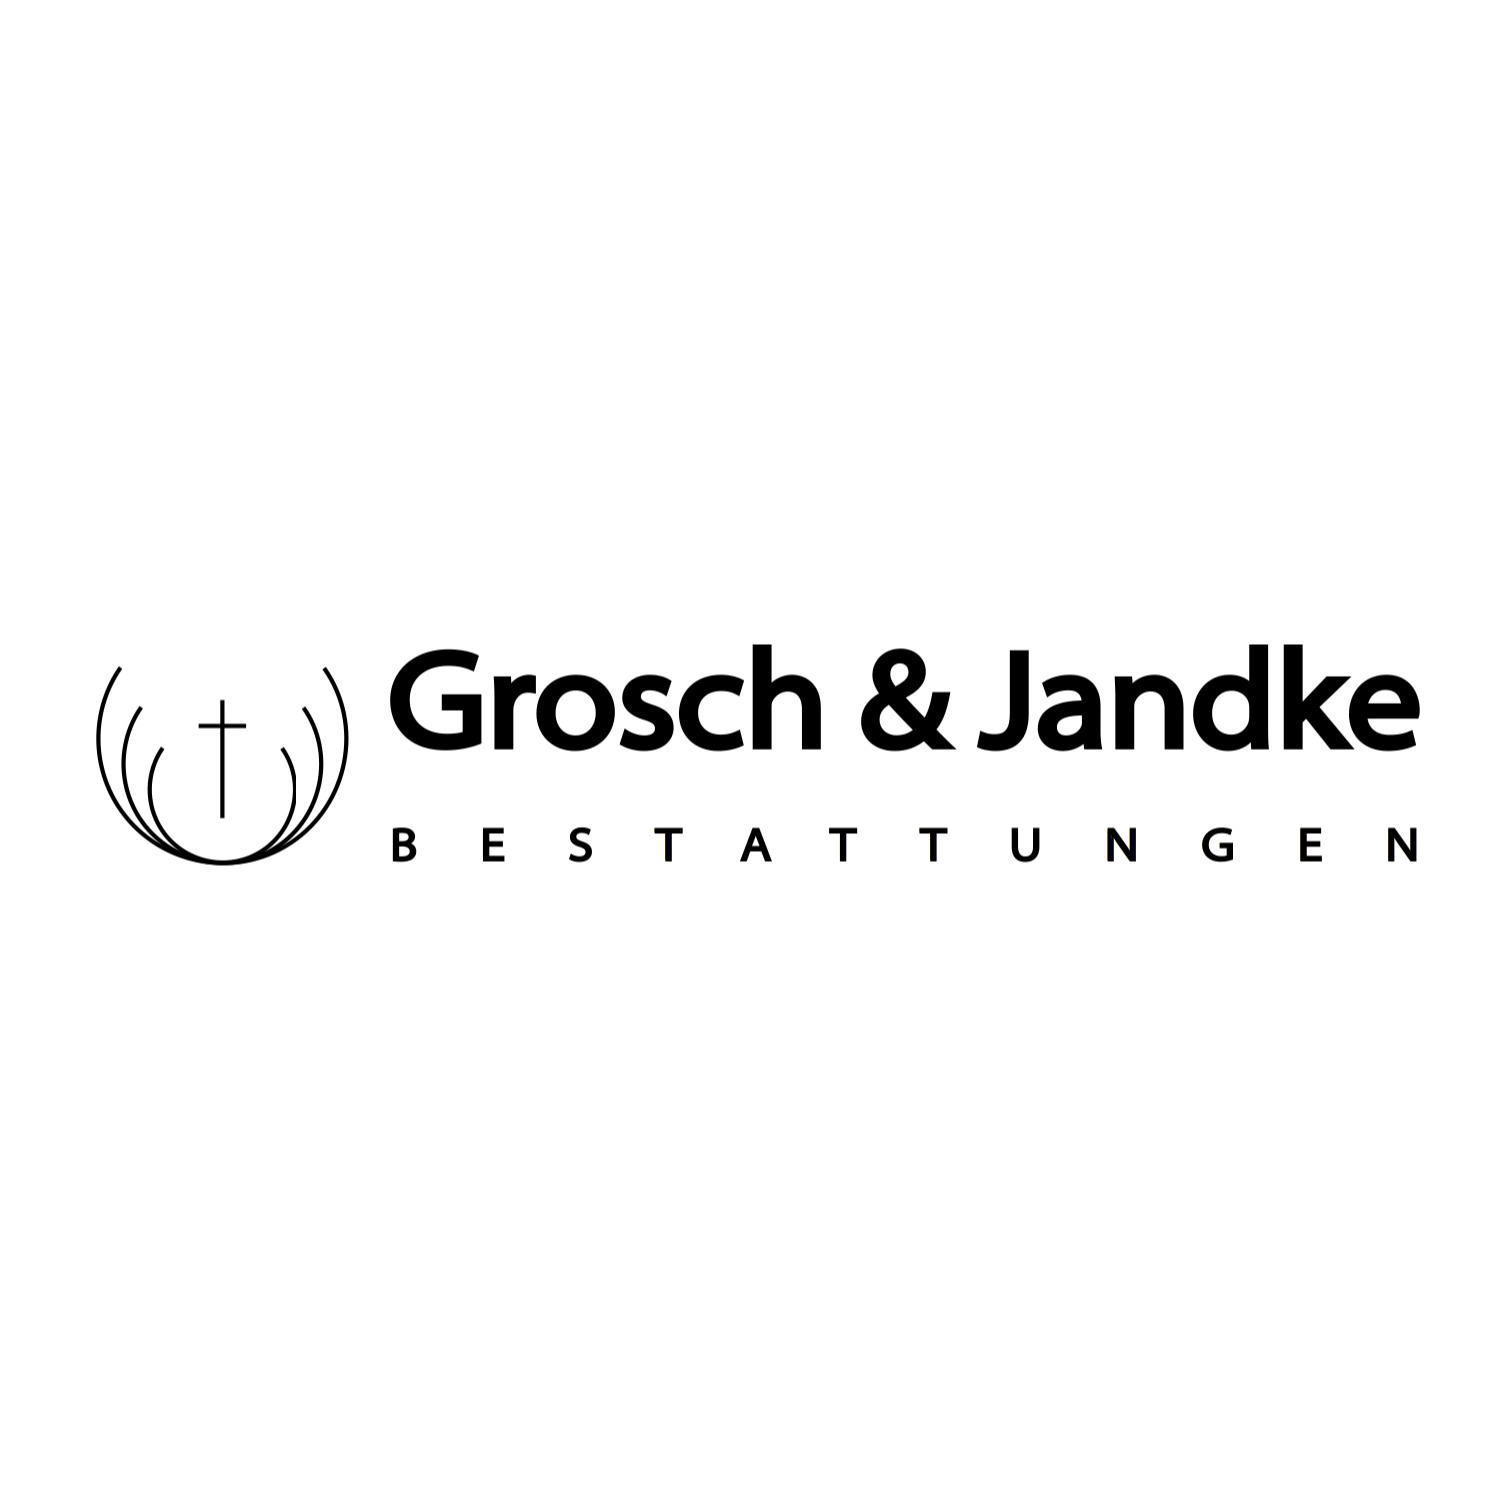 Grosch & Jandke Bestattungen GbR in Kassel - Logo